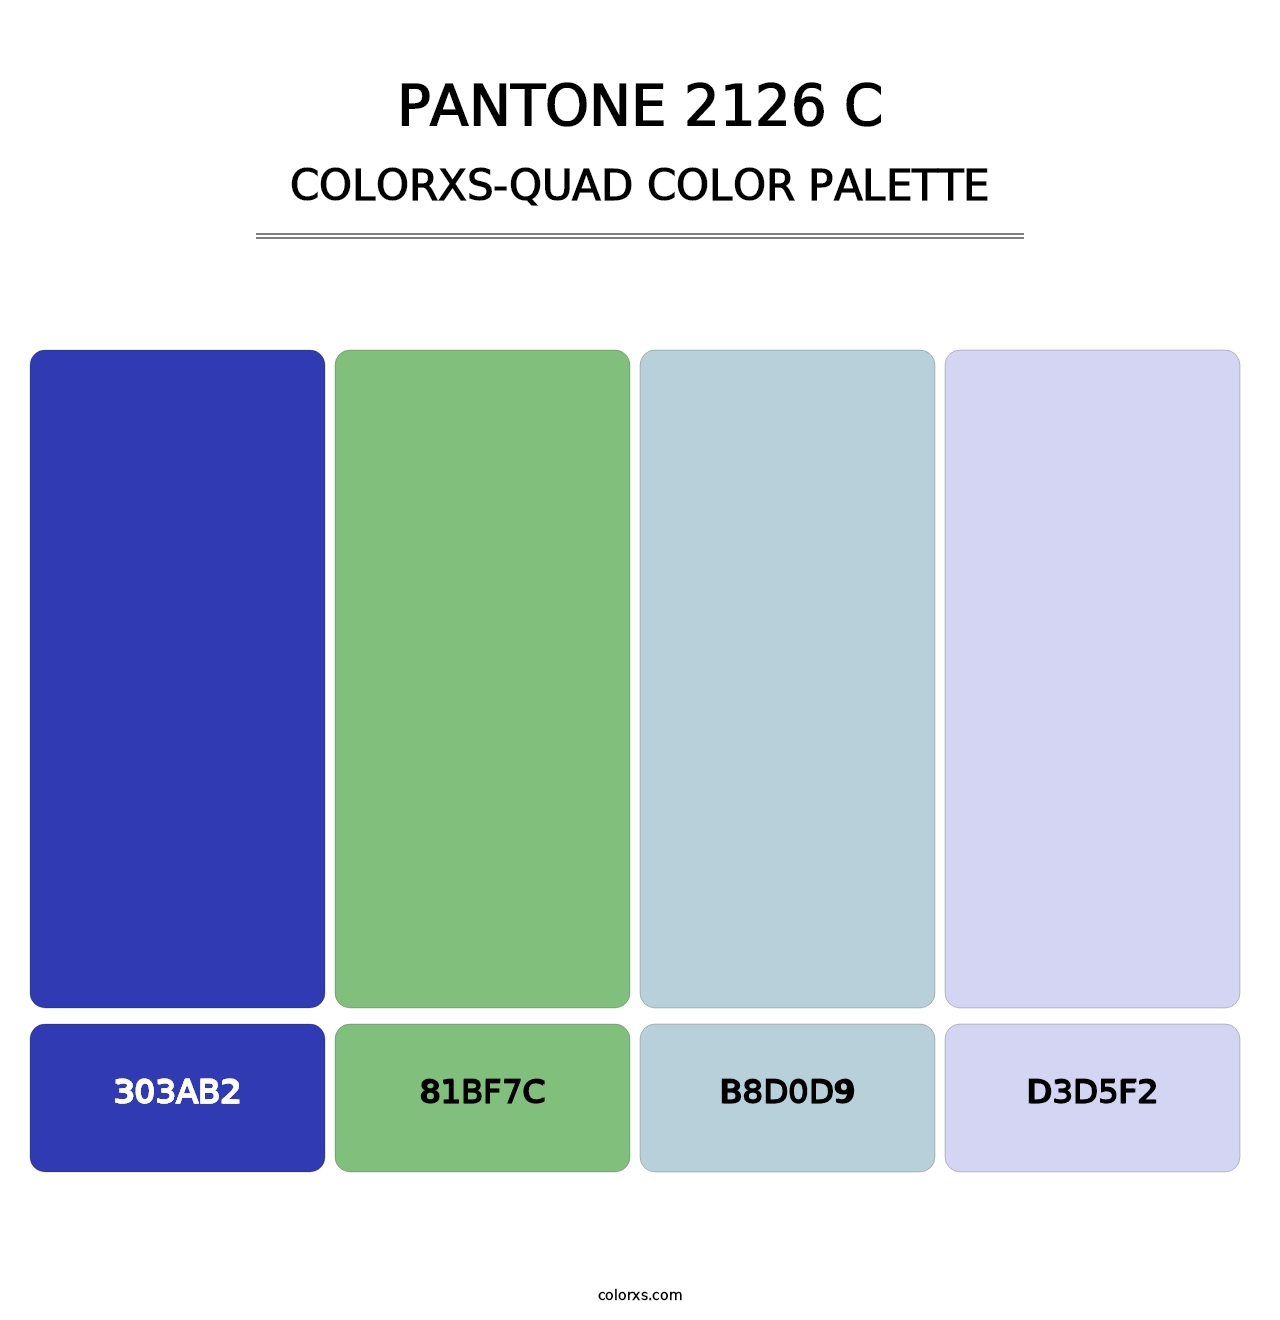 PANTONE 2126 C - Colorxs Quad Palette